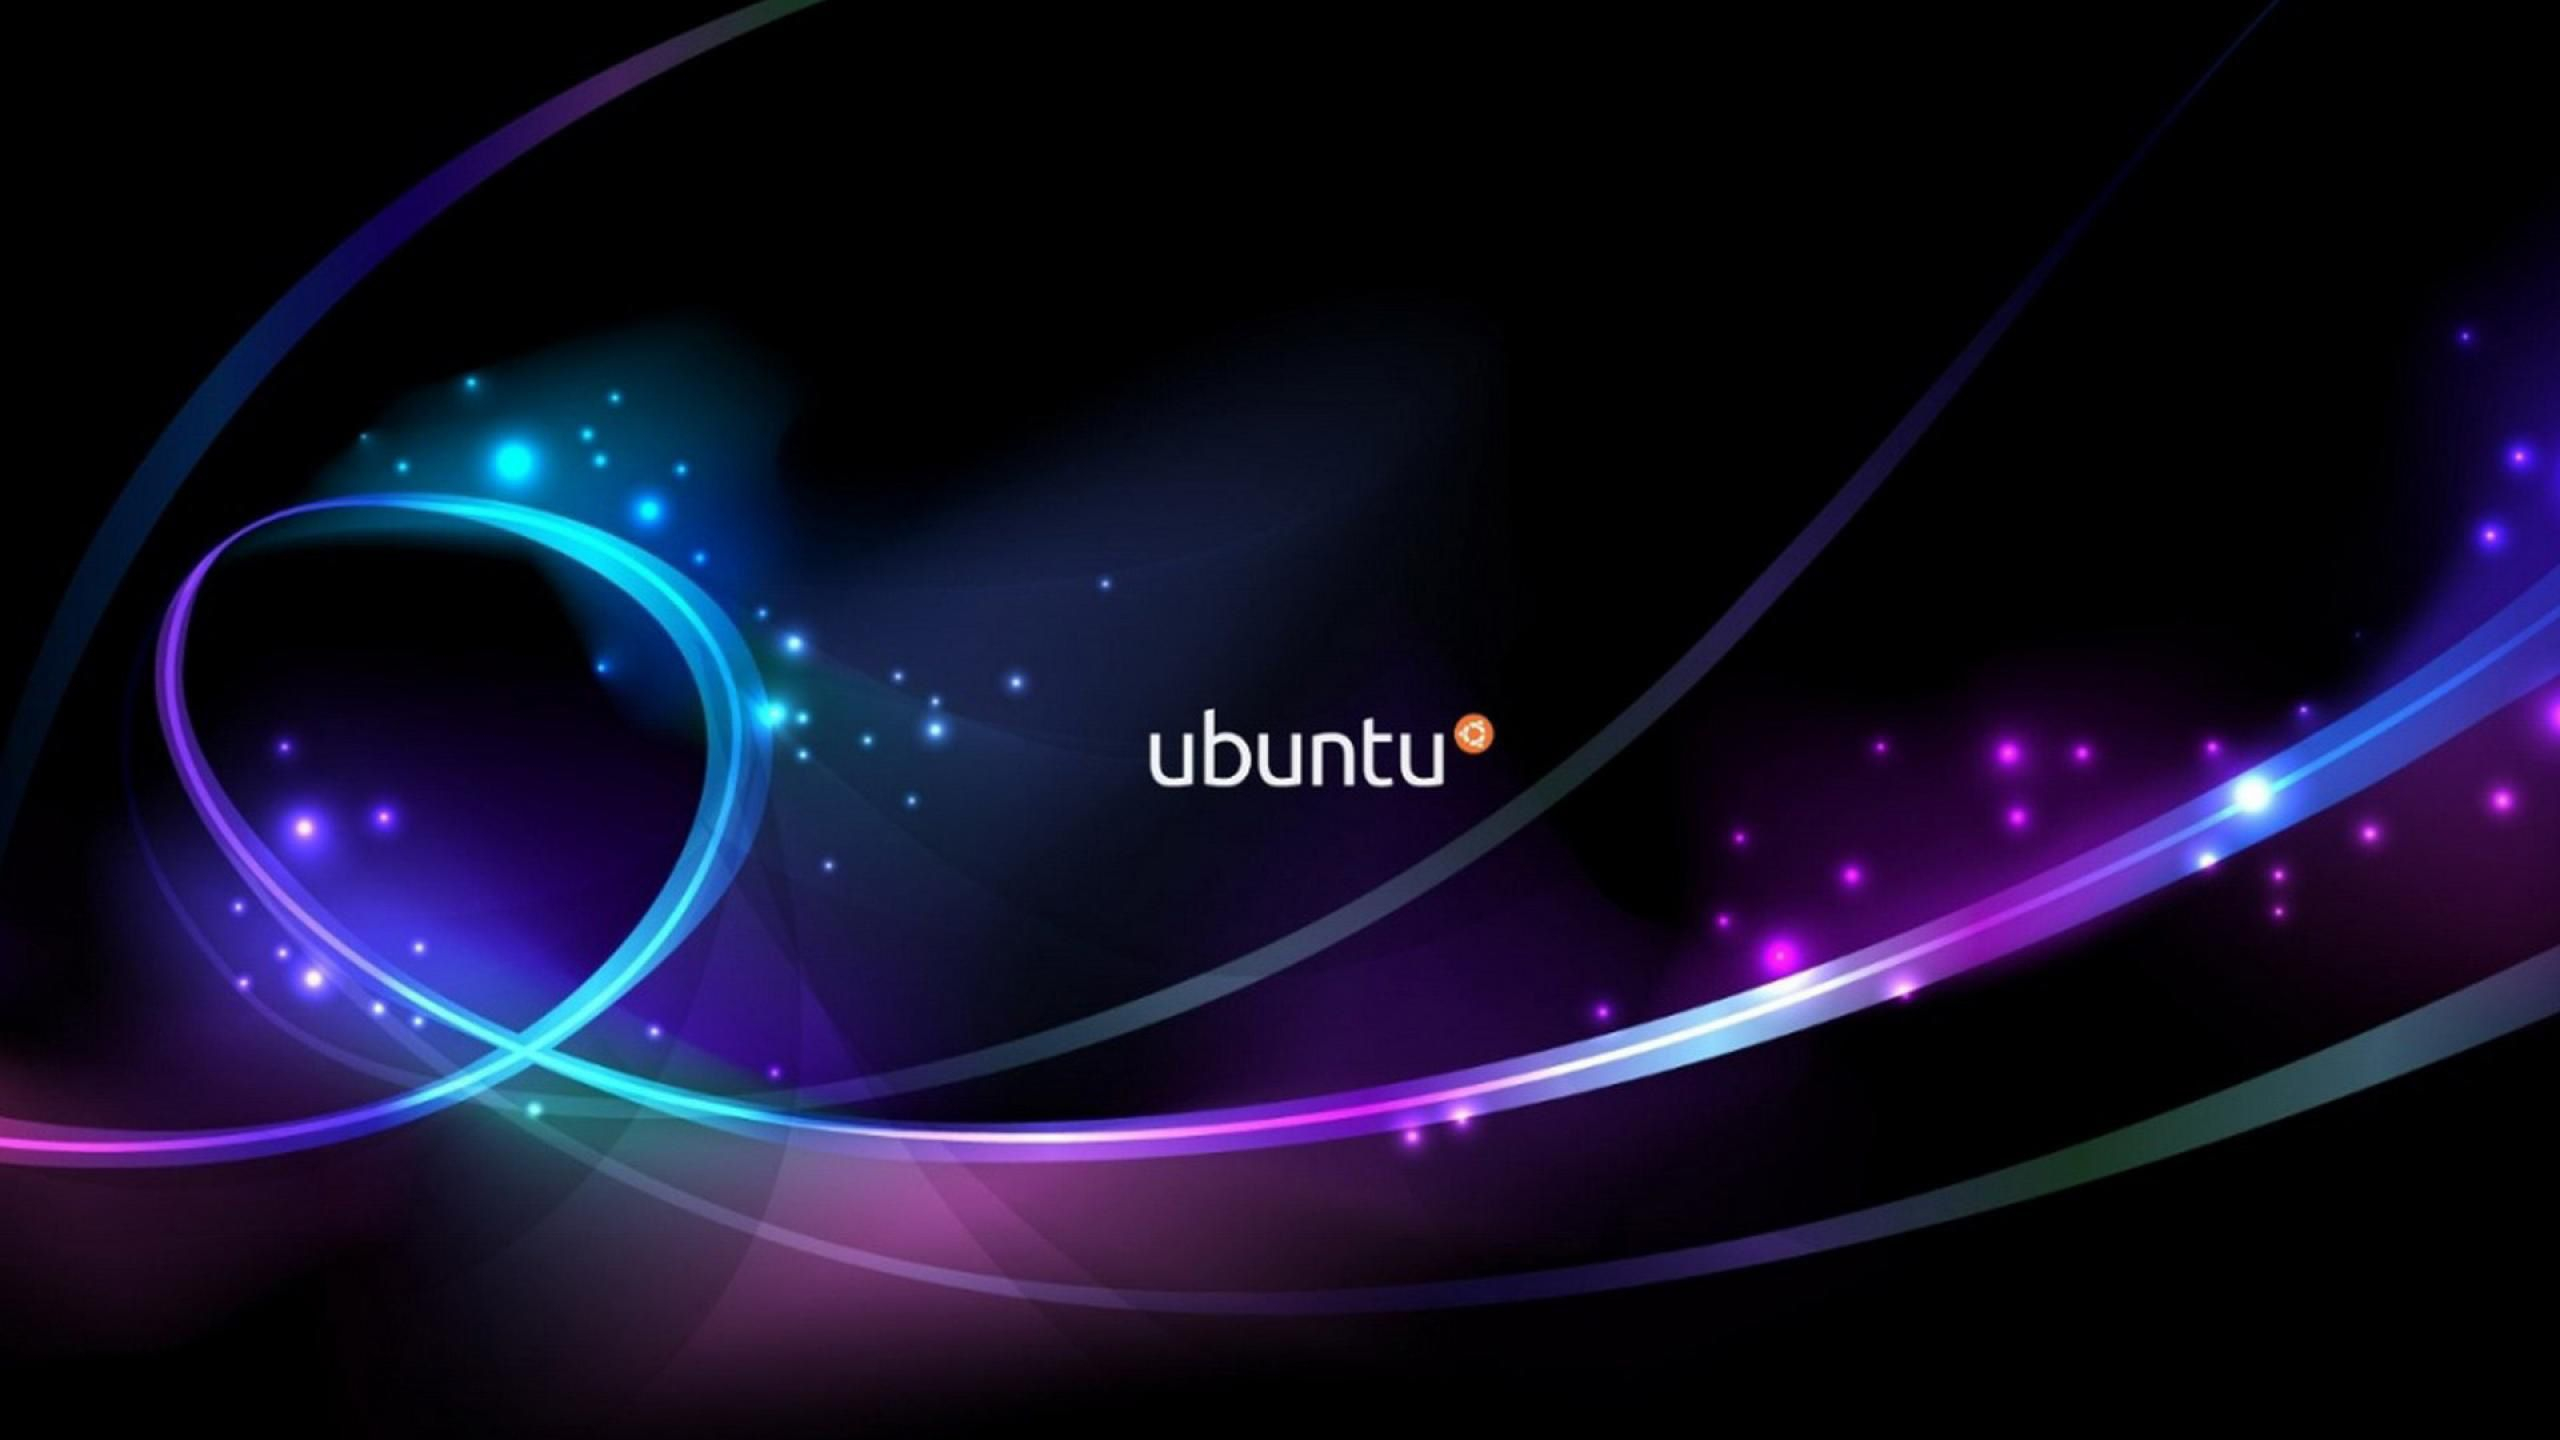 2560x1440 Ubuntu 4K Wallpapers Top Free Ubuntu 4K Backgrounds